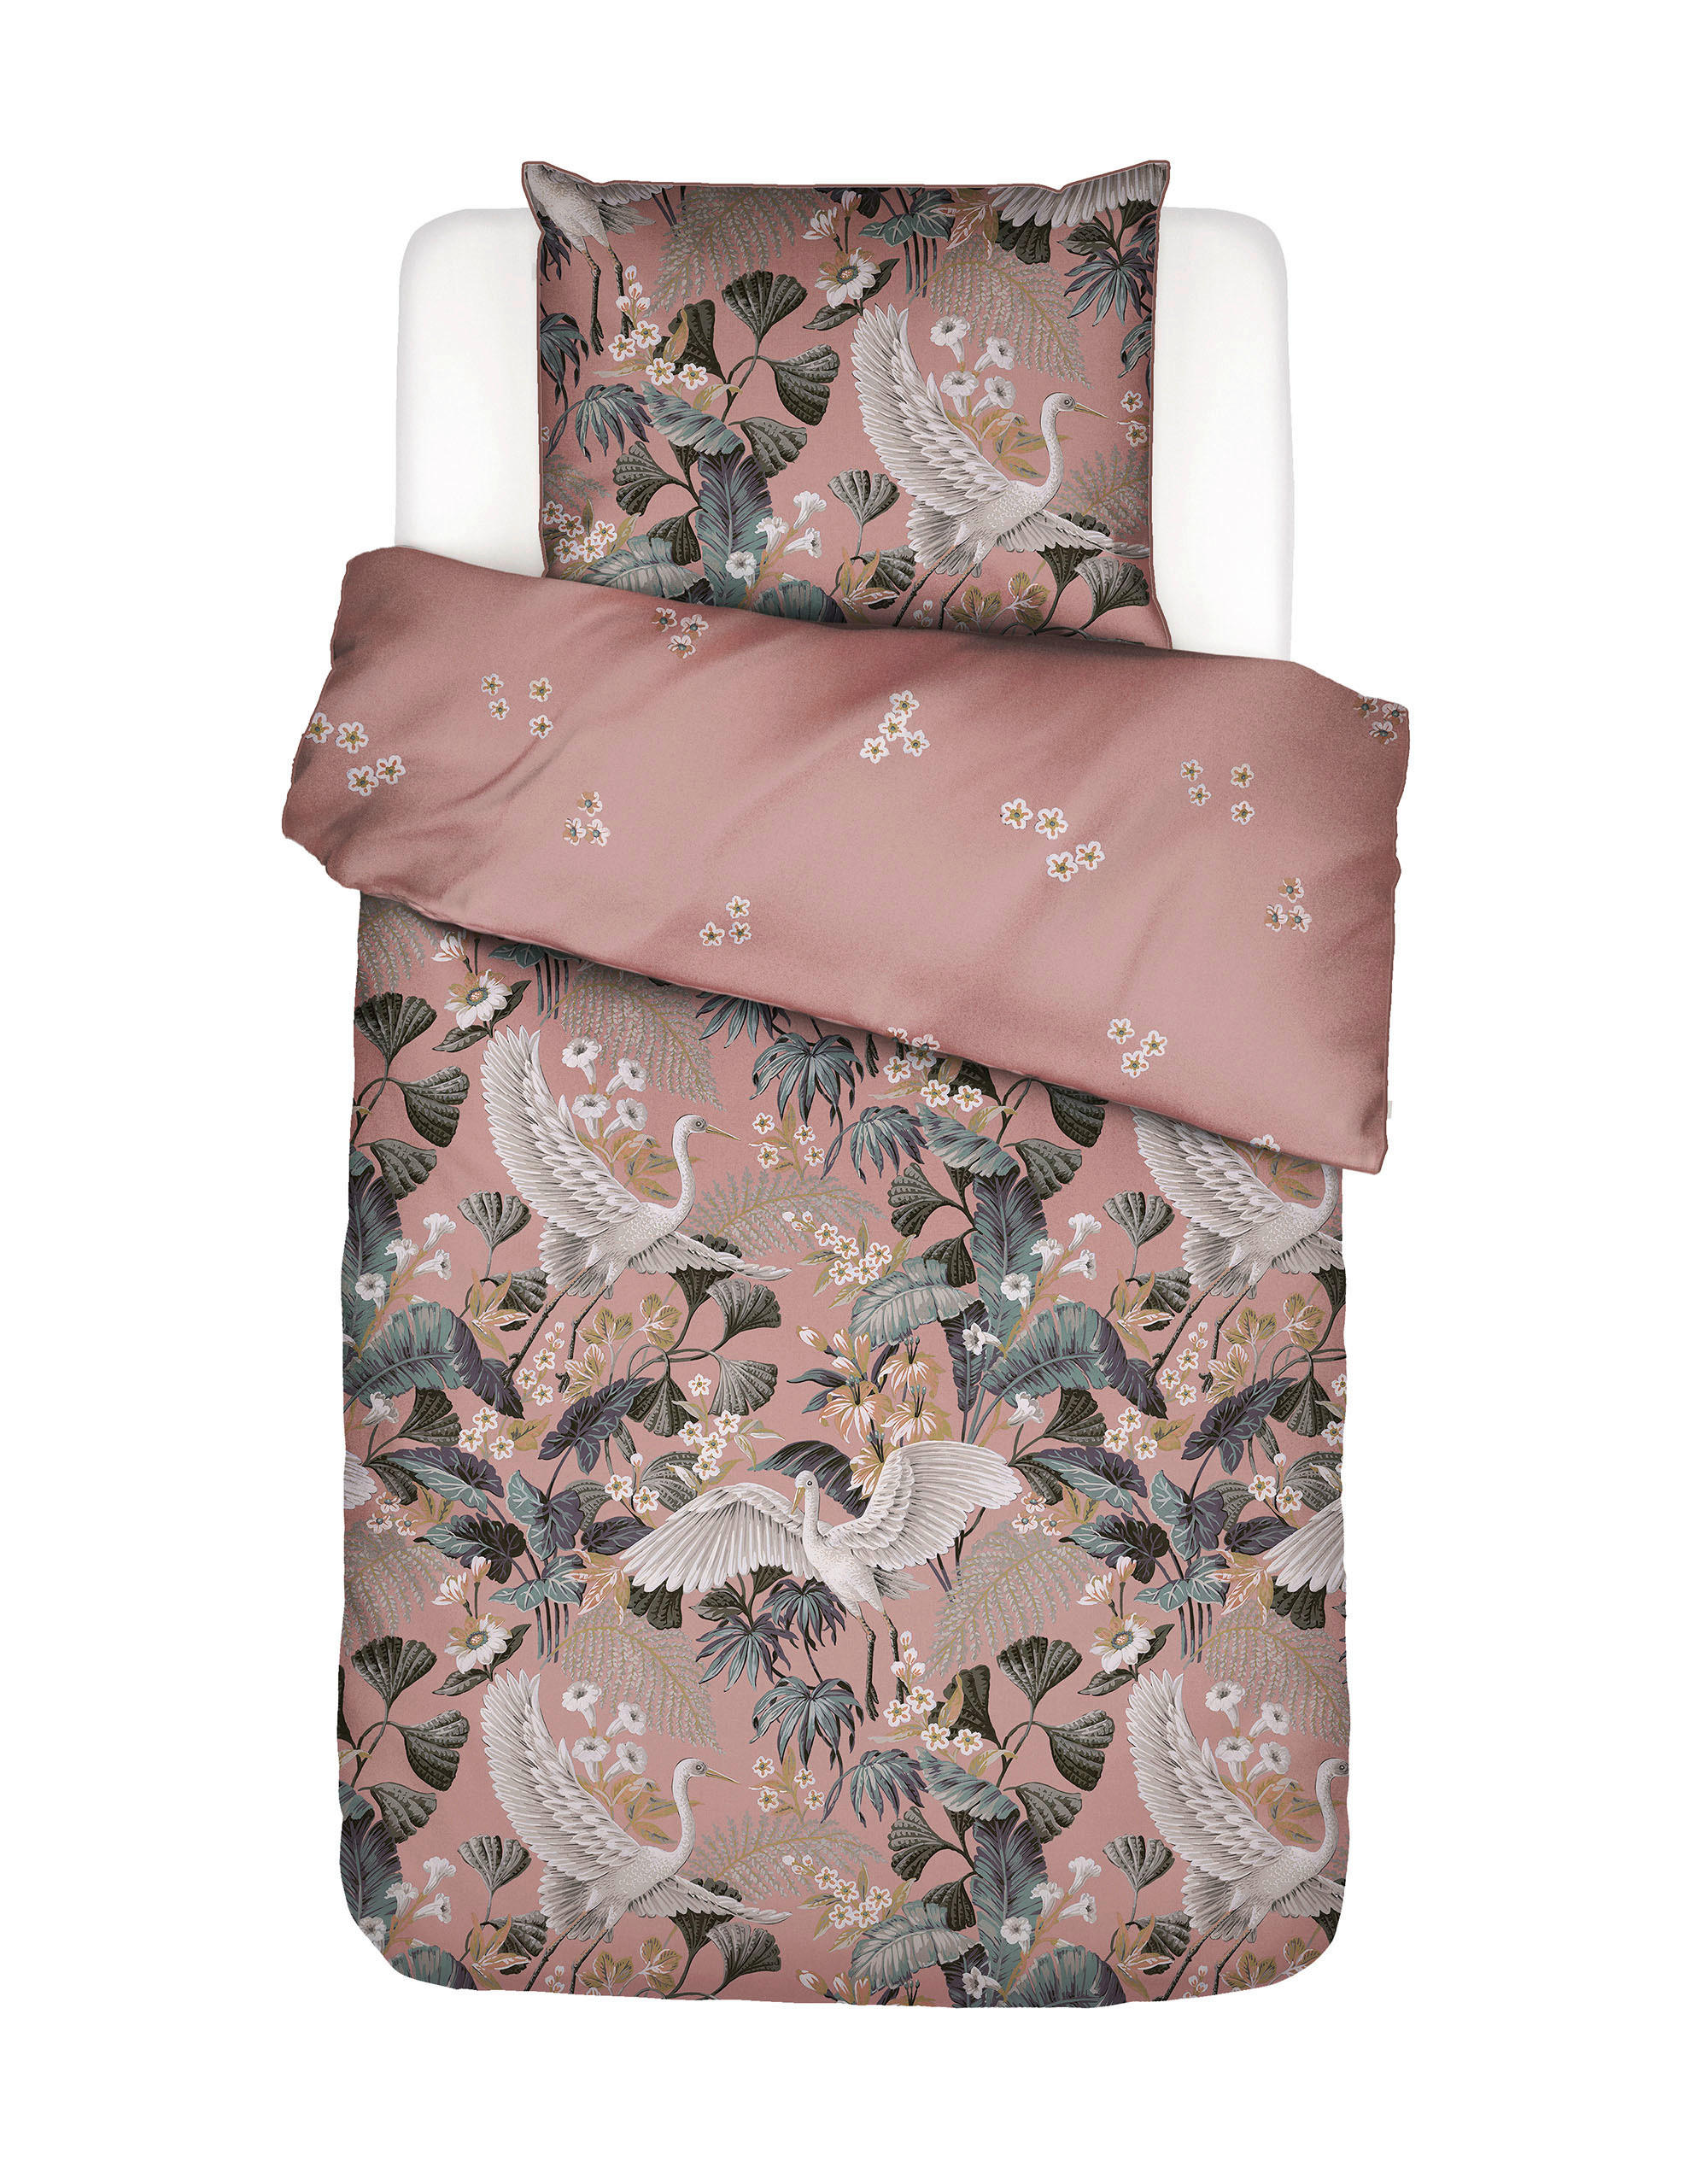 POSTEĽNÁ BIELIZEŇ, satén, pink, 140/200 cm - pink, Design, textil (140/200cm) - Essenza